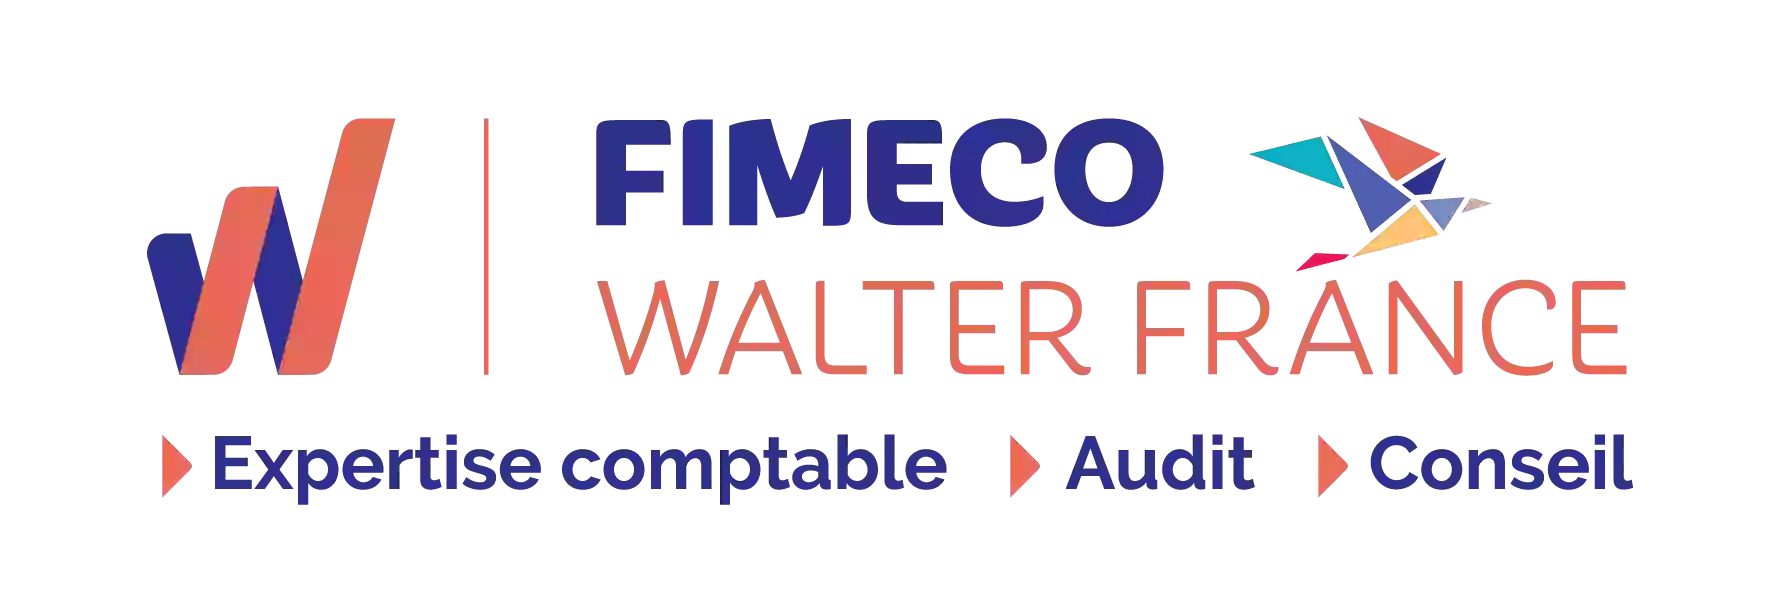 FIMECO Walter France - COMPTABLE - EXPERT COMPTABLE - Artisans Commerçants - Professions libérales - LA ROCHE SUR YON VENDEE